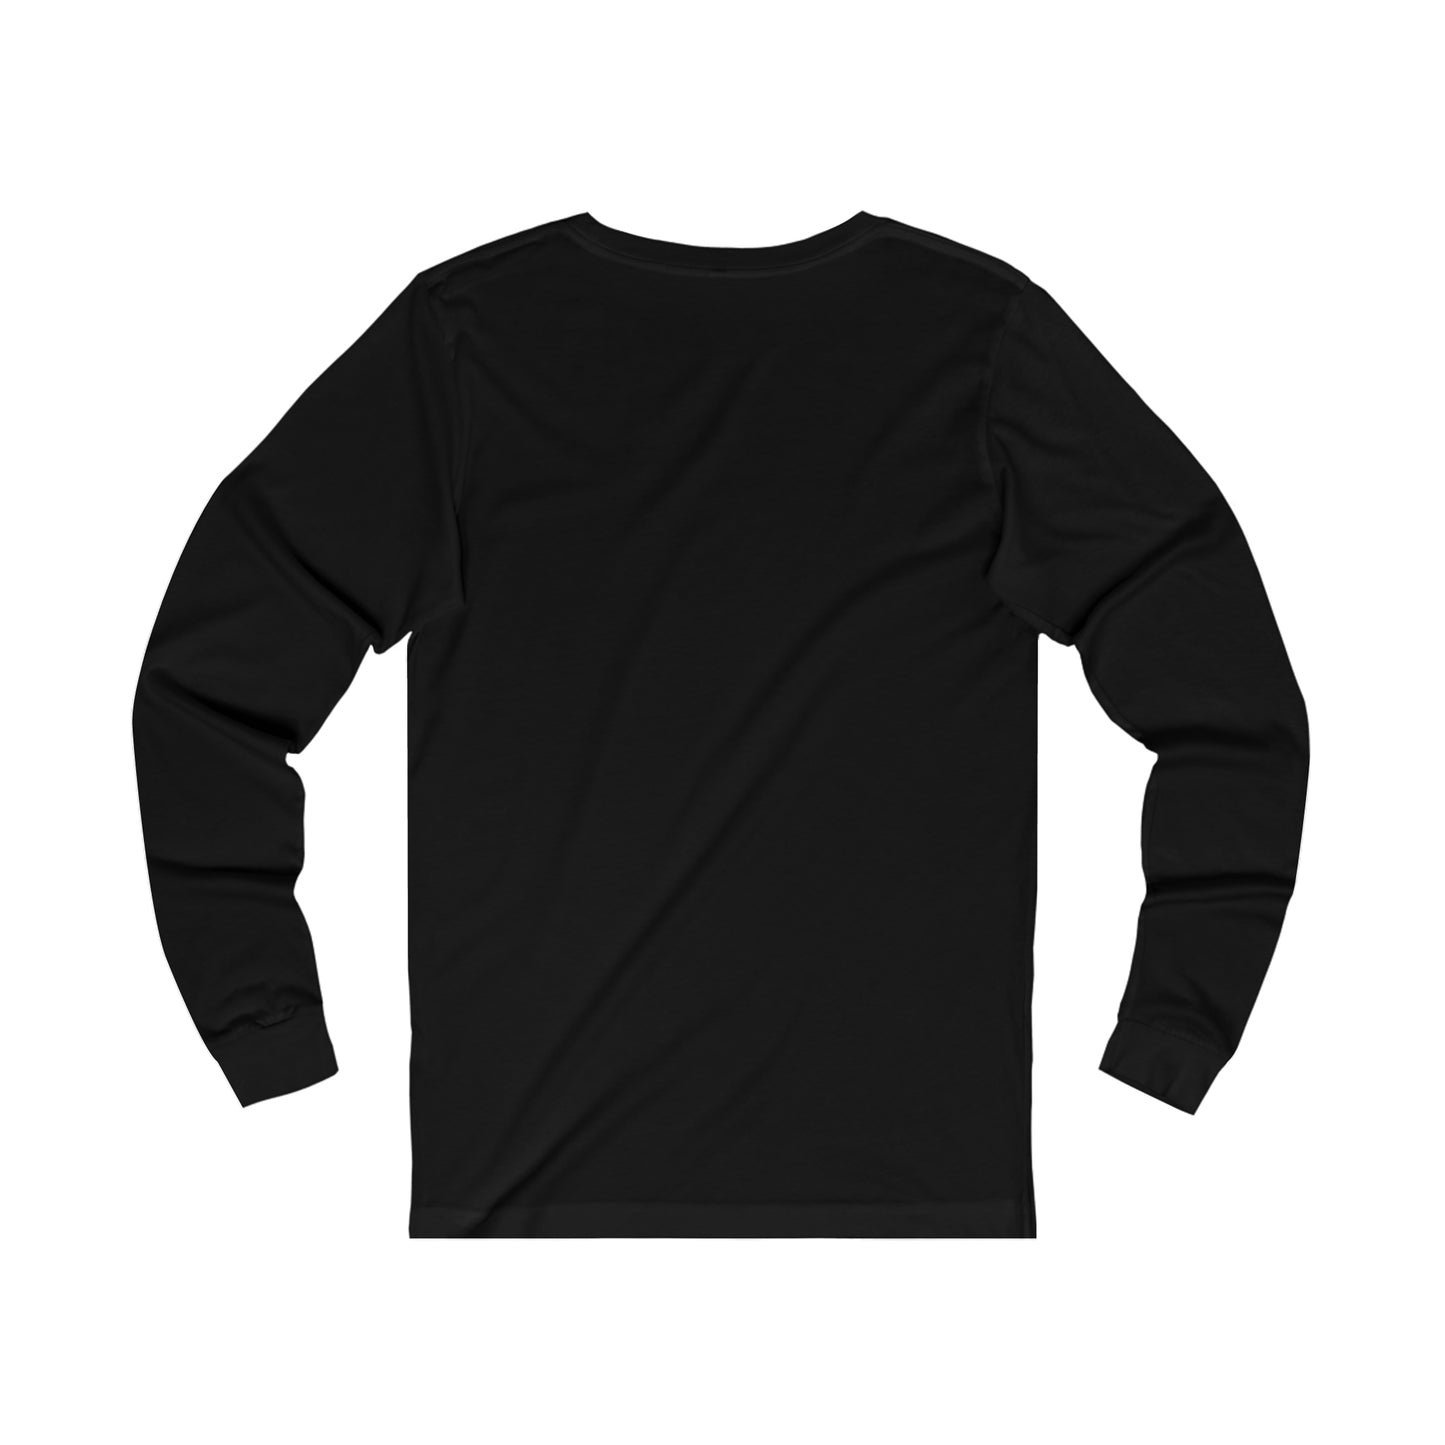 Black and White Rose - Unisex Long Sleeve T-Shirt